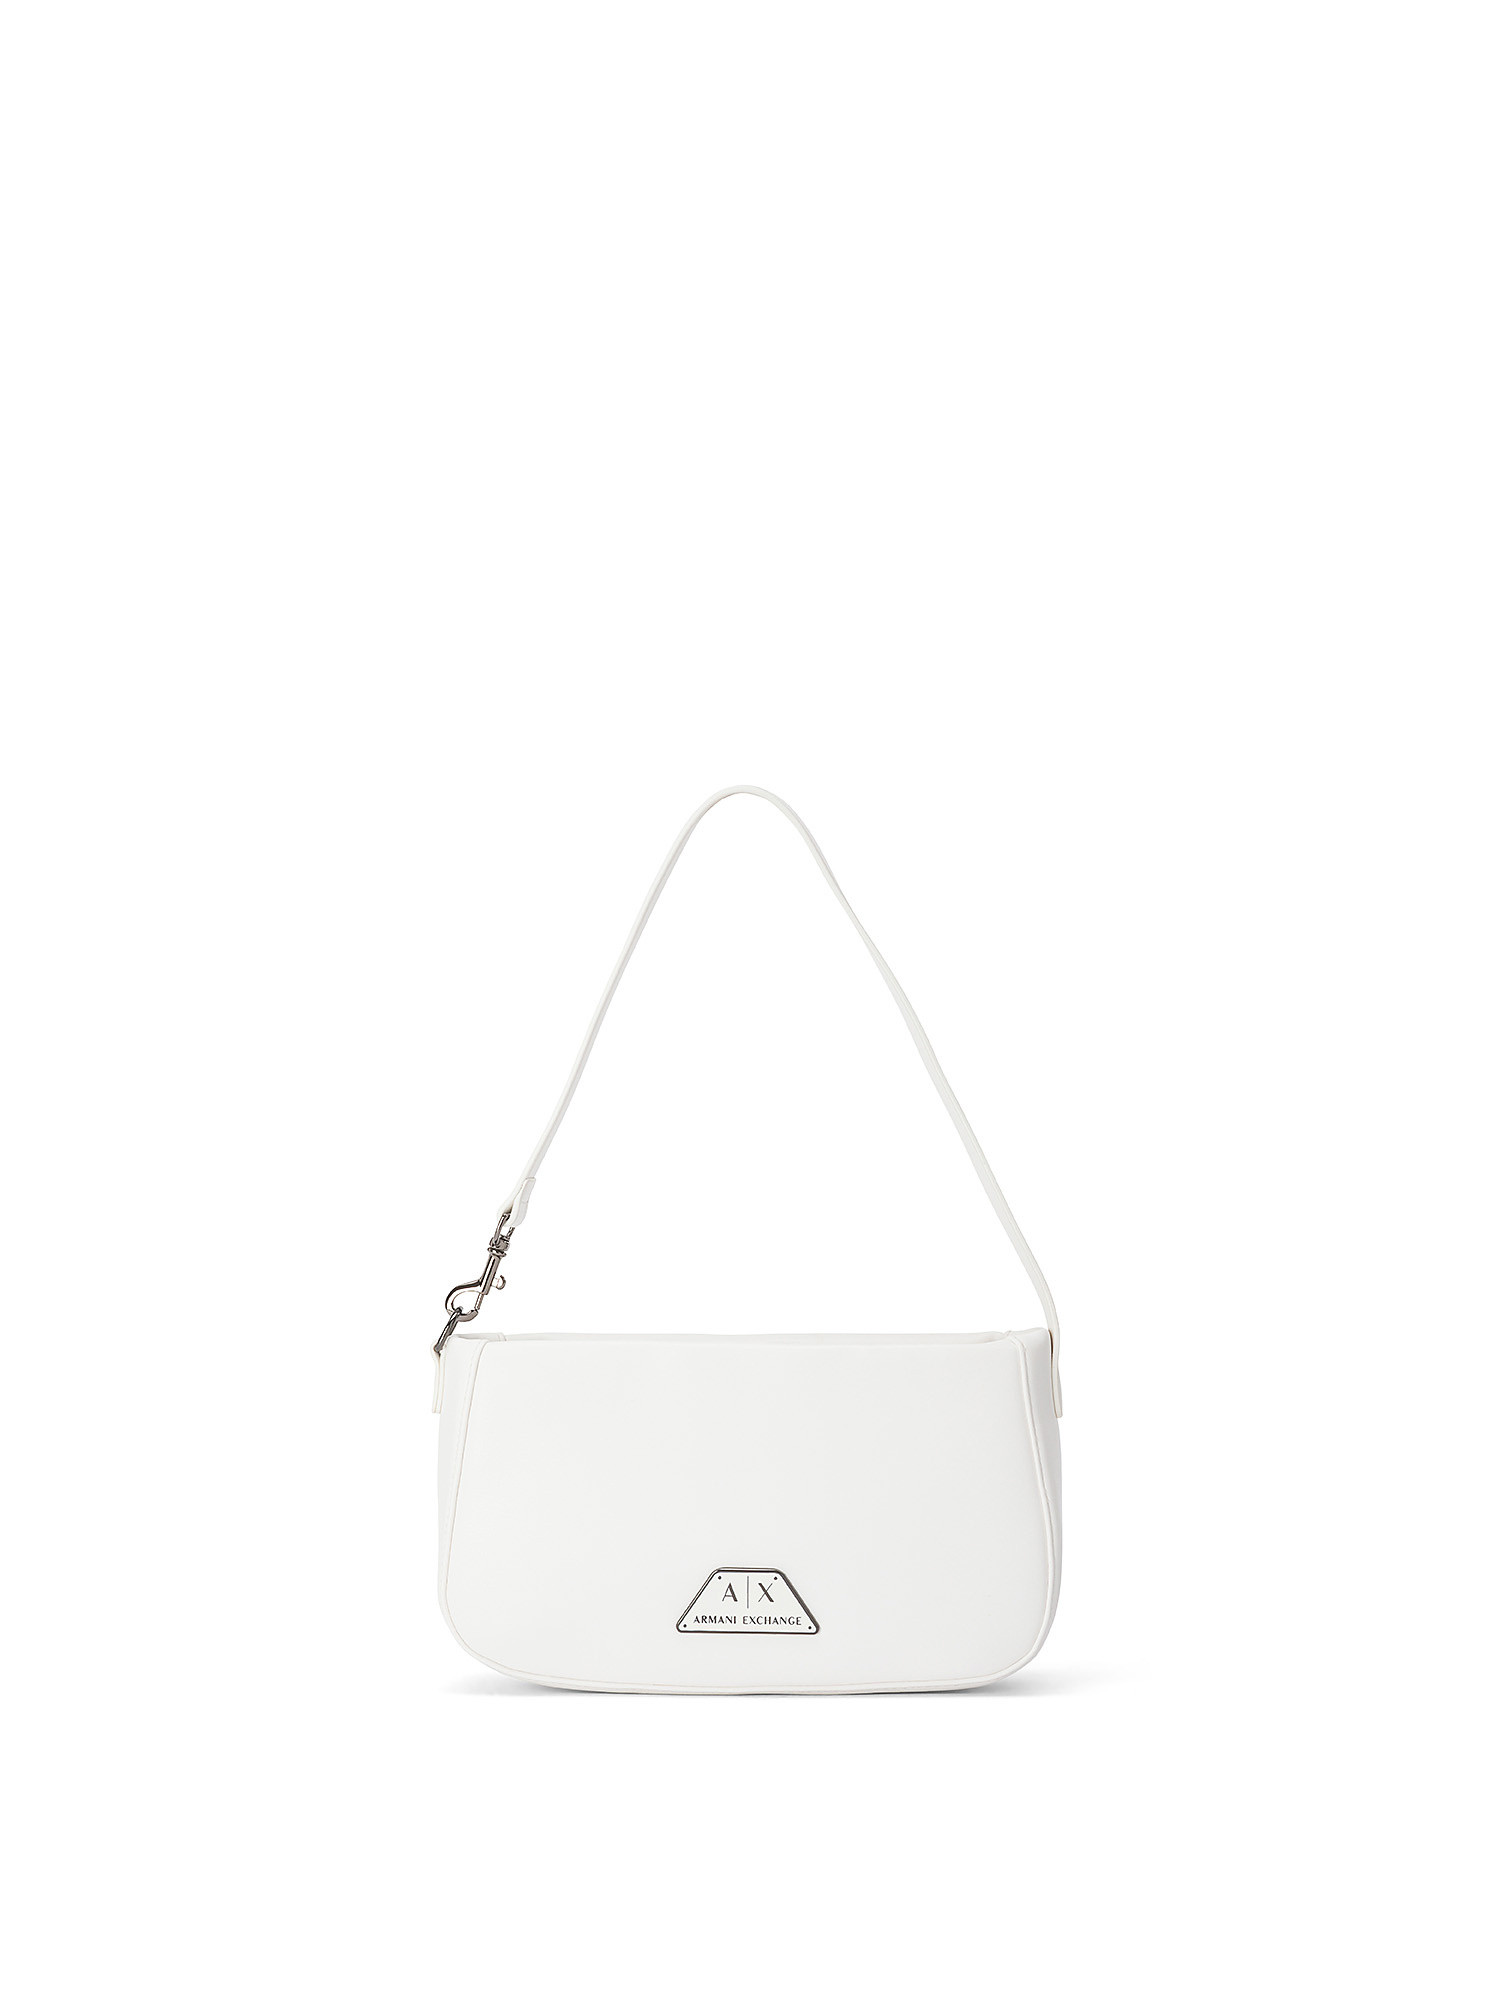 Armani Exchange - Shoulder bag with logo, White, large image number 0